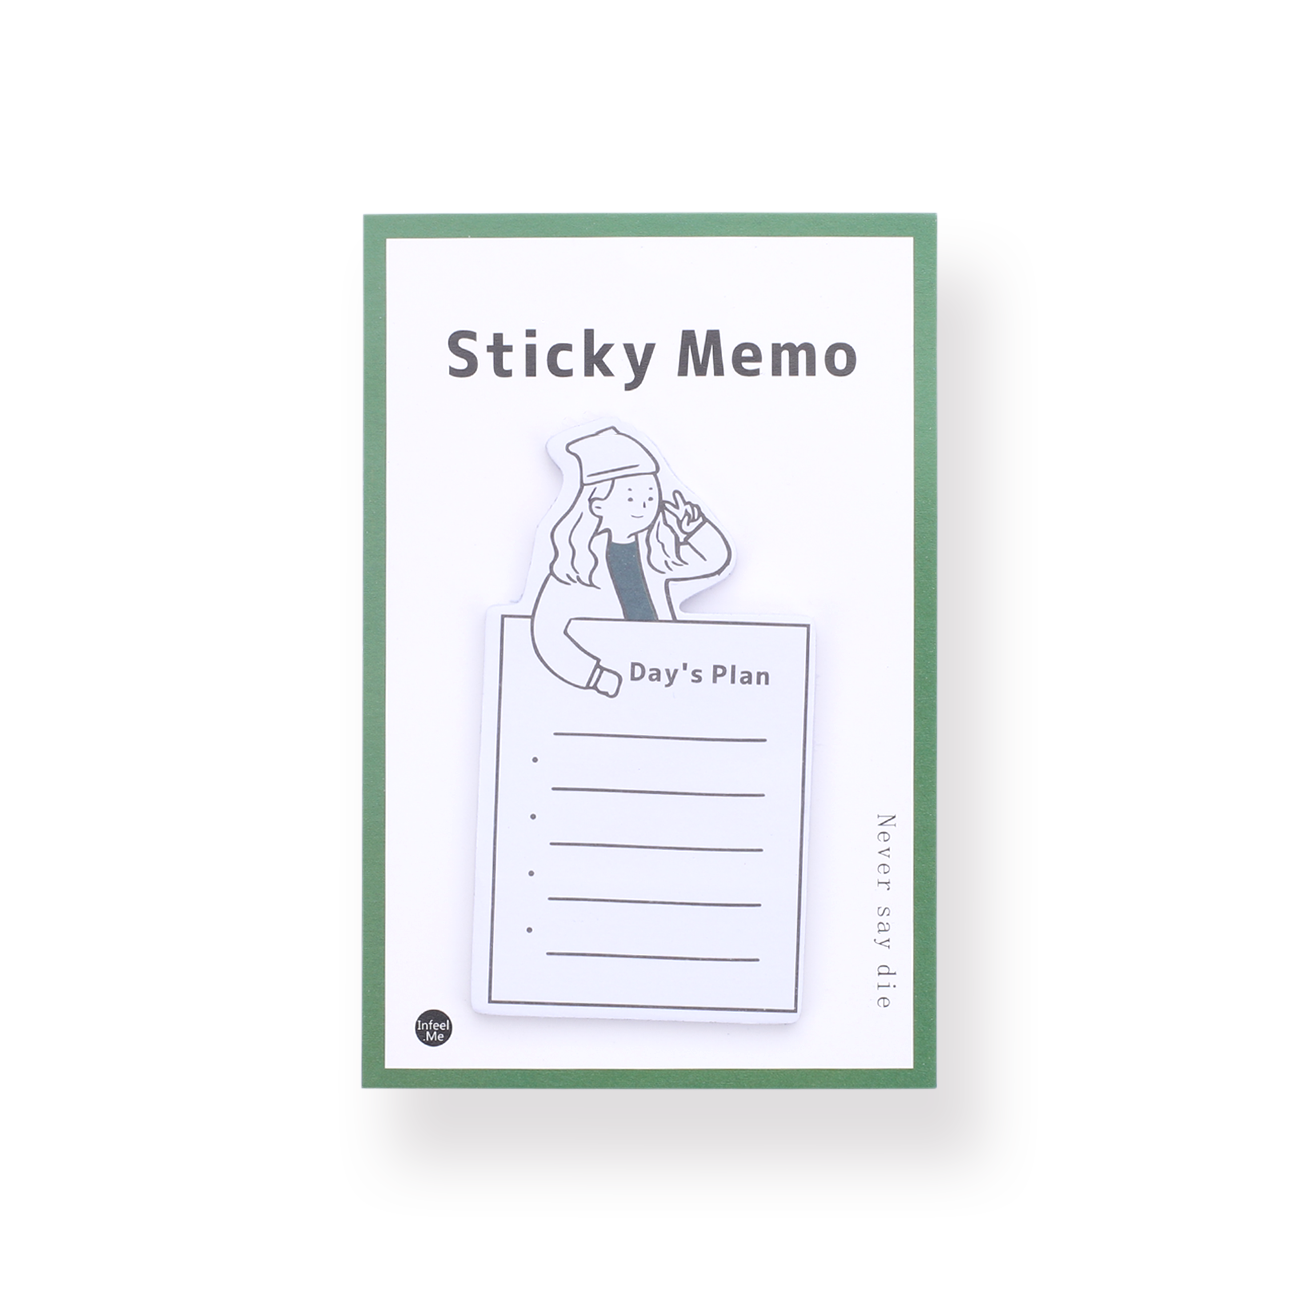 Sticky Memo - Day's Plan